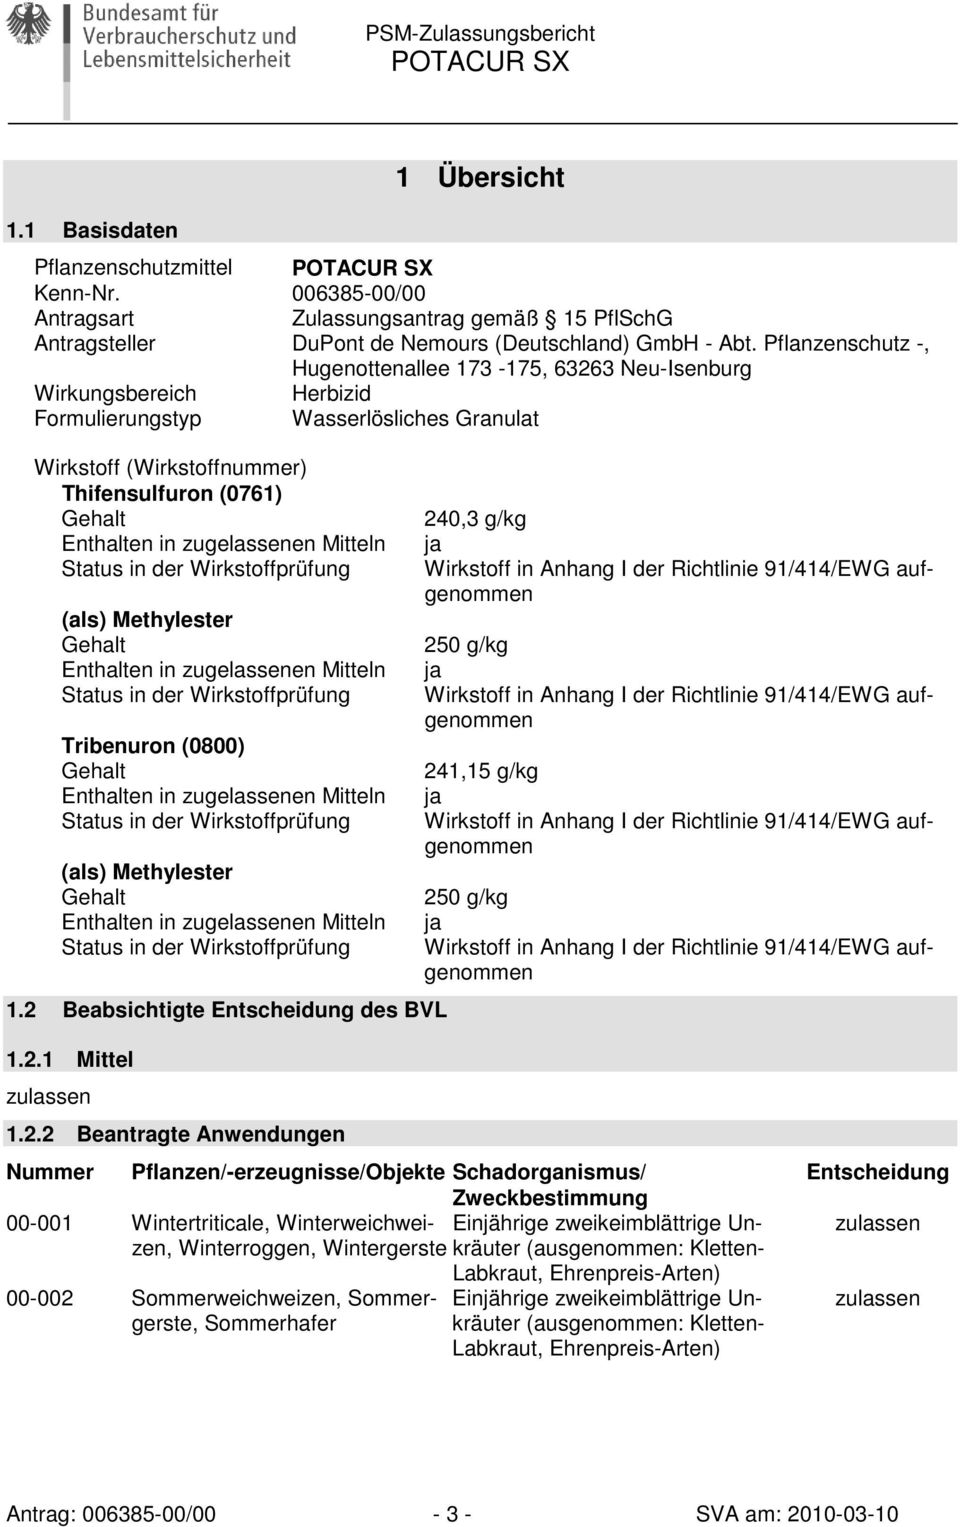 Pflanzenschutz -, Hugenottenallee 173-175, 63263 Neu-Isenburg Wirkungsbereich Herbizid Formulierungstyp Wasserlösliches Granulat Wirkstoff (Wirkstoffnummer) Thifensulfuron (0761) Gehalt Enthalten in